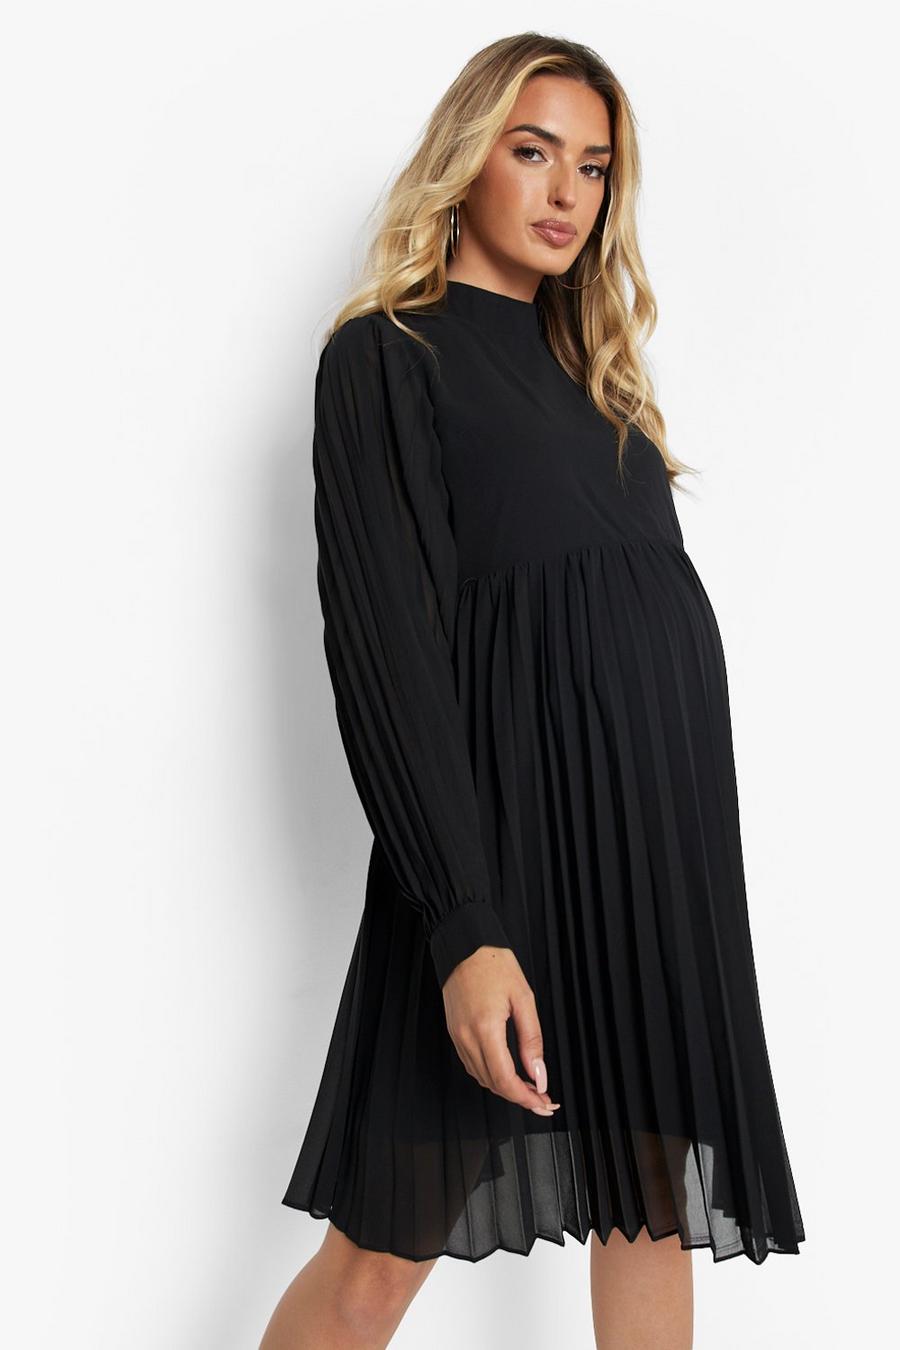 שחור שמלת סקייטר עם צווארון גבוה ושרוולי בלון, להיריון  image number 1